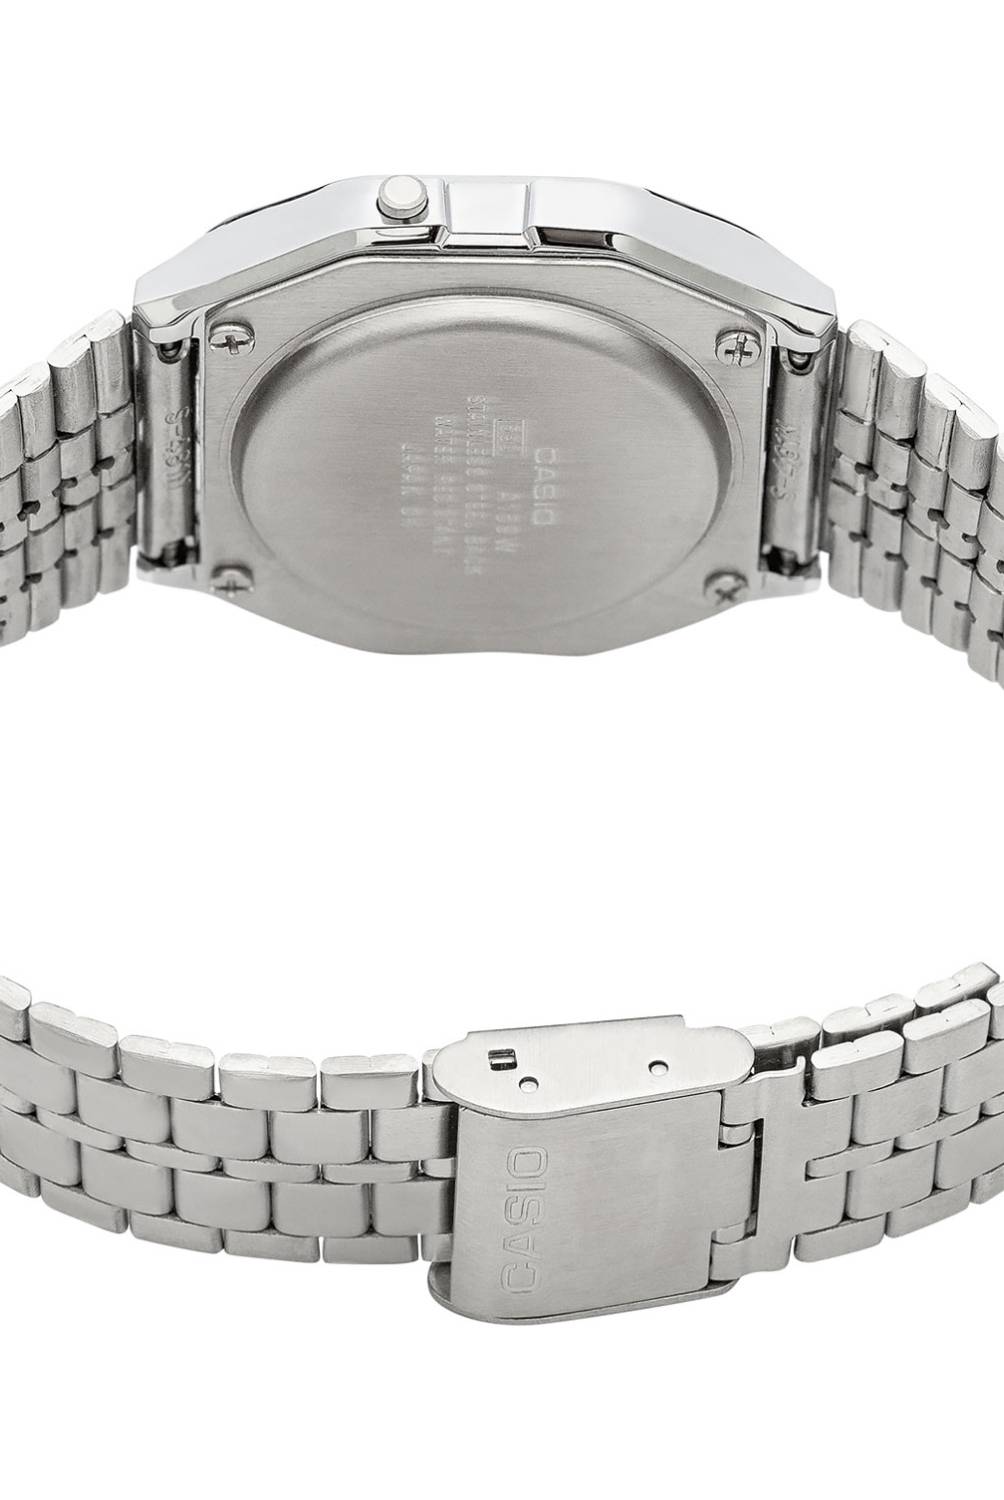 Casio A158WA-1DF - Reloj digital de acero inoxidable para hombre